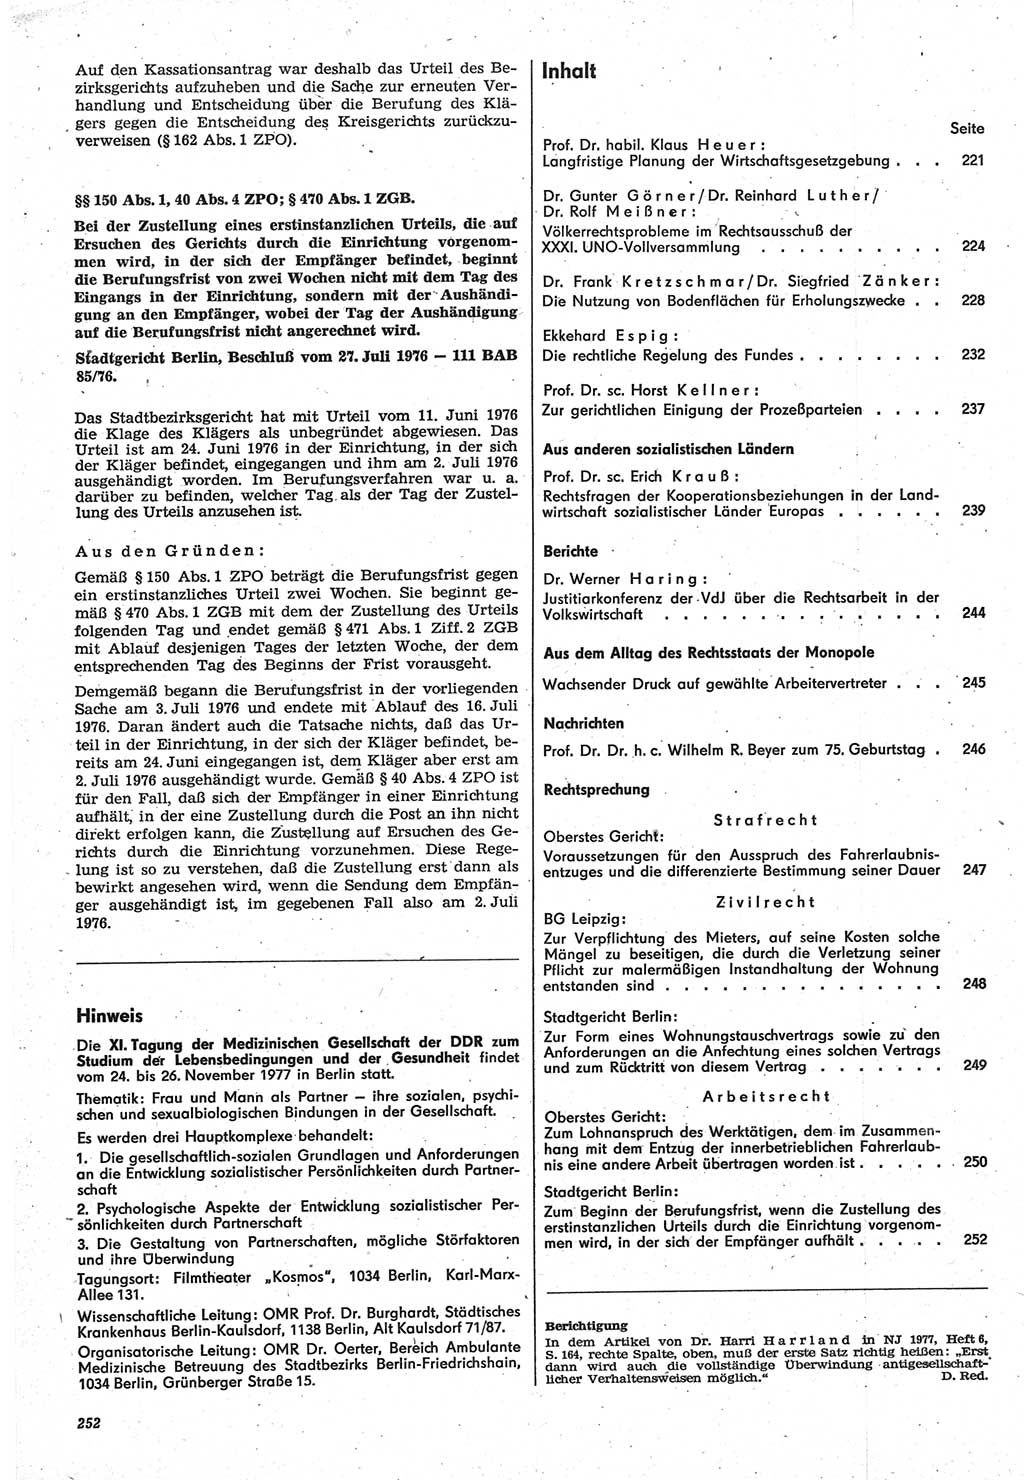 Neue Justiz (NJ), Zeitschrift für Recht und Rechtswissenschaft-Zeitschrift, sozialistisches Recht und Gesetzlichkeit, 31. Jahrgang 1977, Seite 252 (NJ DDR 1977, S. 252)